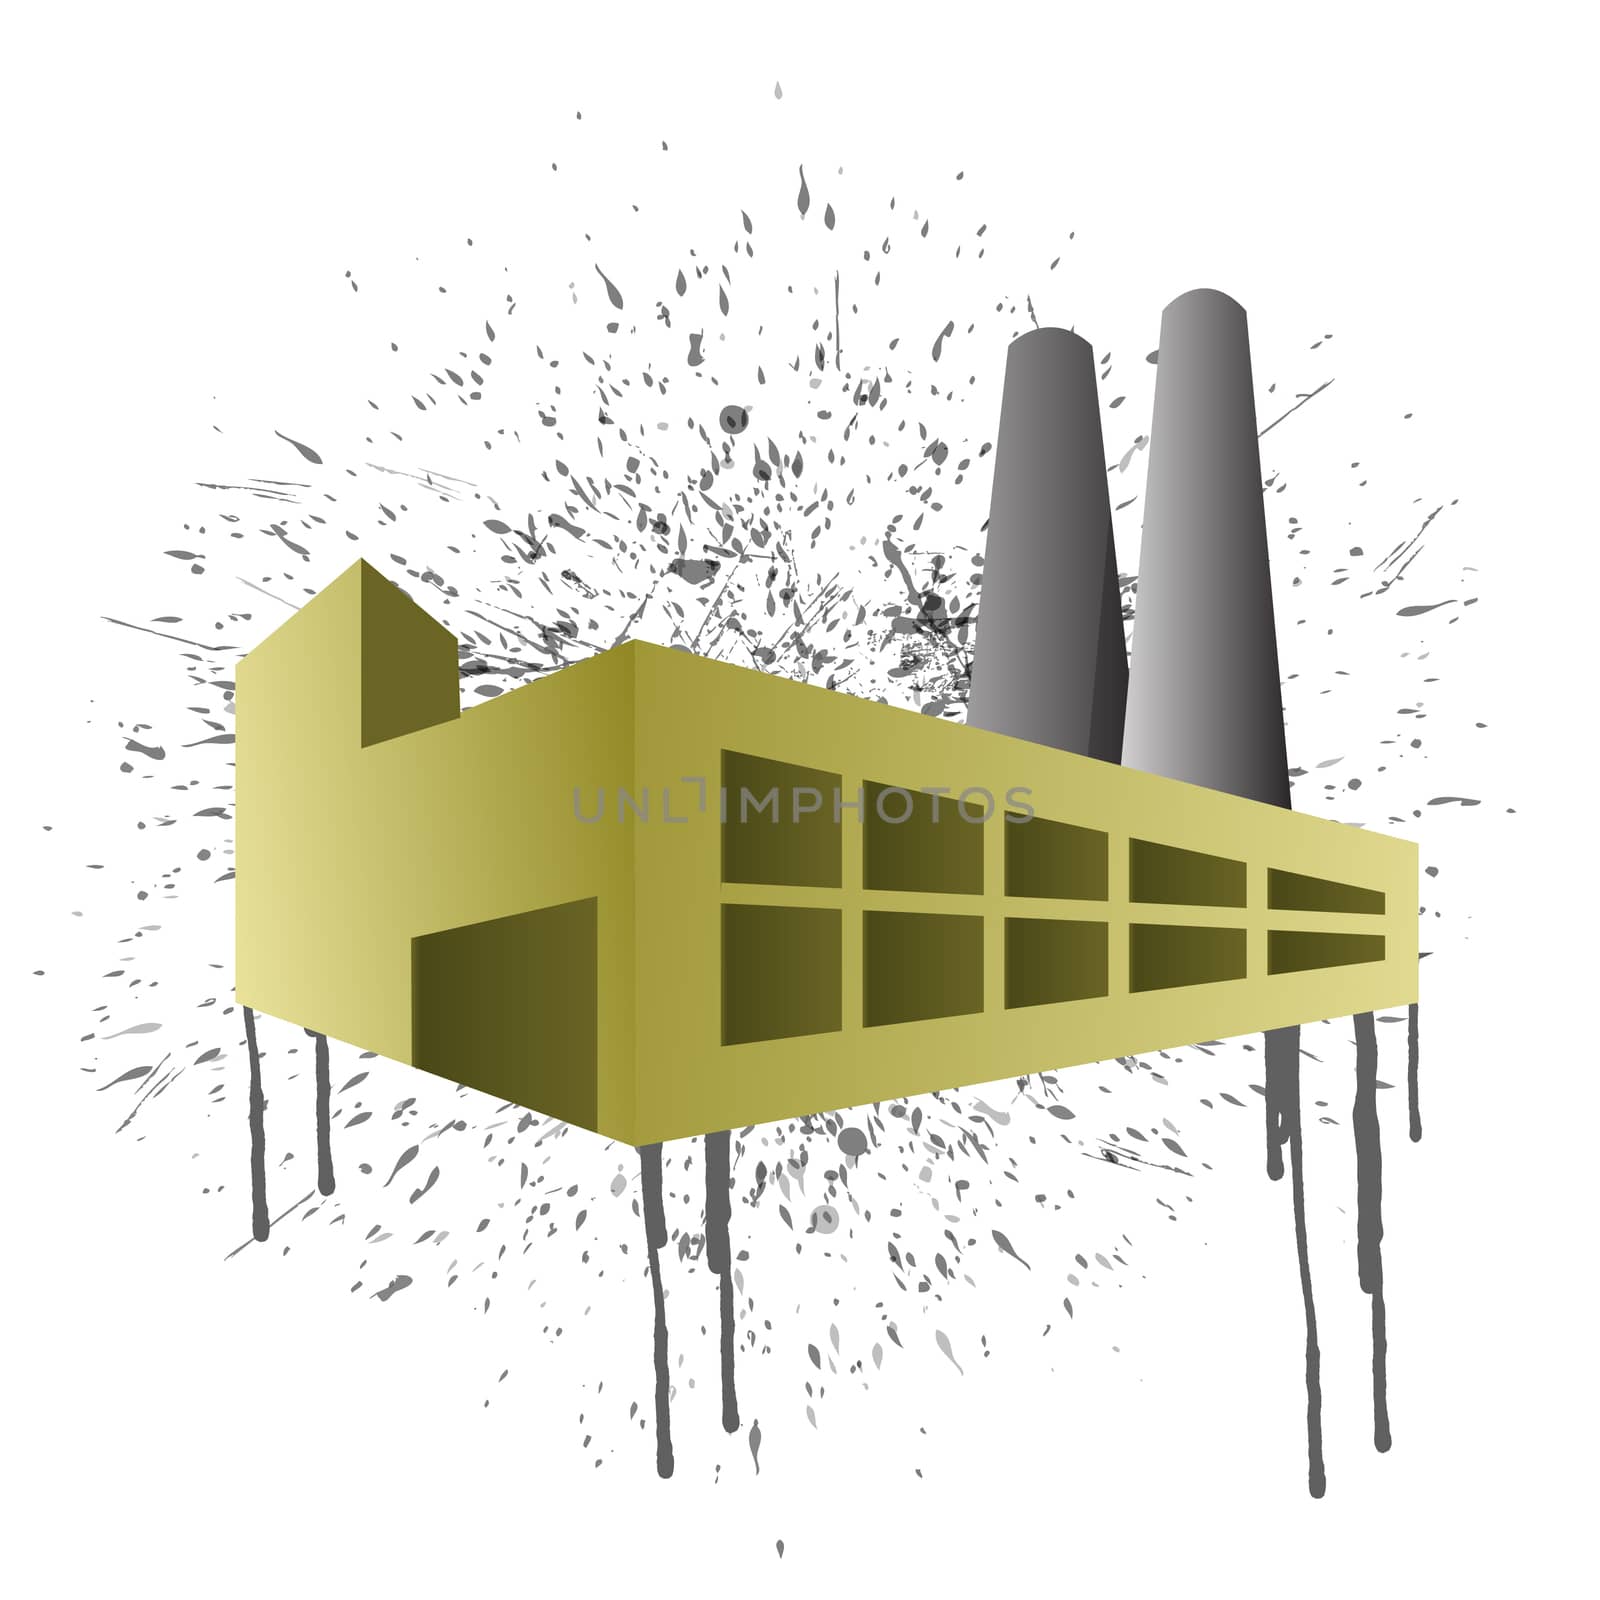 Ink splatter factory illustration design by alexmillos